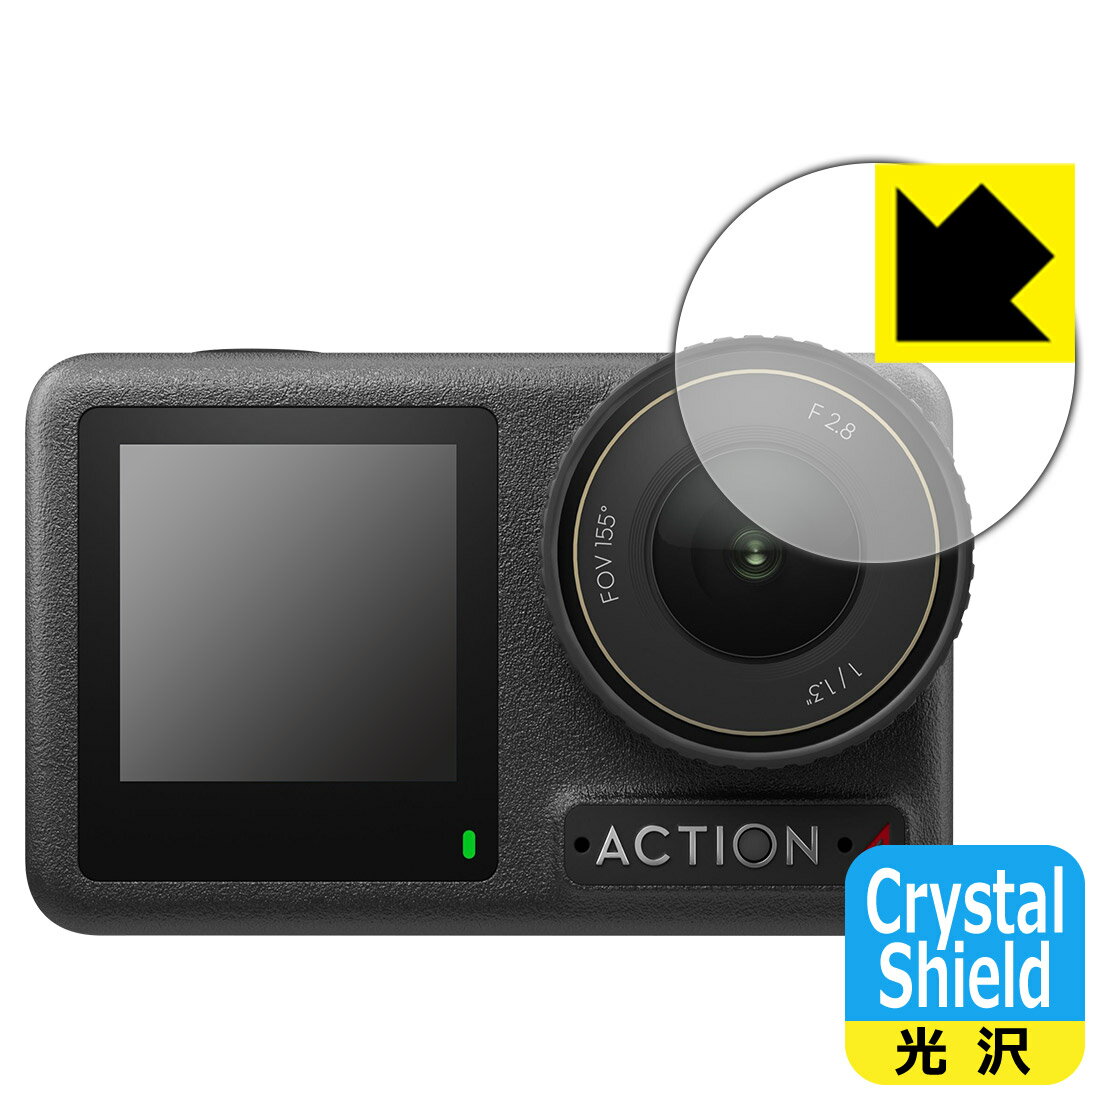 対応機種●対応機種 : DJI Osmo Action 4 レンズ部専用の商品です。　　※レンズ前のガラス面に貼り付けるため、画像に影響が出る可能性がございます。●製品内容 : レンズ部用フィルム3枚・クリーニングワイプ1個●※この機器はレンズ部のコーティングが良いため、フィルムに力を加えると貼り付けた位置から動く場合がございます。簡単に戻せますので、戻してお使いください。●「Crystal Shield」は高い透明度と光沢感で、保護フィルムを貼っていないかのようなクリア感のある『光沢タイプの保護フィルム』●安心の国産素材を使用。日本国内の自社工場で製造し出荷しています。 ★貼り付け失敗交換サービス対象商品★ 国内自社工場製造・発送だからできる 安心の製品保証とサポート ■製品保証 お届けした製品が誤っていたり、不具合があった場合などには、お届けから1ヶ月以内にメールにてお問い合わせください。交換等対応させていただきます。[キャンセル・返品（返金・交換）について] ■■貼り付け失敗時の交換サービス■■貼り付けに失敗しても1回だけ無償交換ができます。(失敗したフィルムをお送りいただき、新品に無償交換します。往復の送料のみお客様にご負担をお願いいたします。詳しくは製品に同封の紙をご確認ください) ■■保護フィルム貼り付け代行サービス■■保護フィルムの貼り付け作業に自信がない方には、PDA工房で貼り付け作業を代行いたします。(PDA工房の保護フィルムのみが対象です。詳しくは製品に同封の紙をご確認ください) Crystal Shield【光沢】保護フィルム 素材説明 ■高級感あふれる光沢と画質を損なわない透明度！貼っていることを意識させないほどの高い透明度に、高級感あふれる光沢・クリアな仕上げとなります。動画視聴や画像編集など、機器本来の発色を重視したい方におすすめです。■ハードコートでスリキズを防ぎ、フッ素加工で汚れもつきにくい！ハードコート加工がされており、キズや擦れに強くなっています。簡単にキズがつかず長くご利用いただけます。表面はフッ素コーティングがされており、皮脂や汚れがつきにくく、また、落ちやすくなっています。指滑りもなめらかで、快適な使用感です。■気泡の入りにくい特殊な自己吸着タイプ接着面は気泡の入りにくい特殊な自己吸着タイプです。素材に柔軟性があり、貼り付け作業も簡単にできます。また、はがすときにガラス製フィルムのように割れてしまうことはありません。貼り直しが何度でもできるので、正しい位置へ貼り付けられるまでやり直すことができます。■抗菌加工で清潔抗菌加工によりフィルム表面の菌の繁殖を抑えることができます。清潔な画面を保ちたい方におすすめです。※抗菌率99.9％ / JIS Z2801 抗菌性試験方法による評価■安心の日本製最高級グレードの国産素材を日本国内の弊社工場で加工している完全な Made in Japan です。安心の品質をお届けします。 【ポスト投函送料無料】商品は【ポスト投函発送 (追跡可能メール便)】で発送します。お急ぎ、配達日時を指定されたい方は以下のクーポンを同時購入ください。【お急ぎ便クーポン】　プラス110円(税込)で速達扱いでの発送。お届けはポストへの投函となります。【配達日時指定クーポン】　プラス550円(税込)で配達日時を指定し、宅配便で発送させていただきます。【お急ぎ便クーポン】はこちらをクリック【配達日時指定クーポン】はこちらをクリック